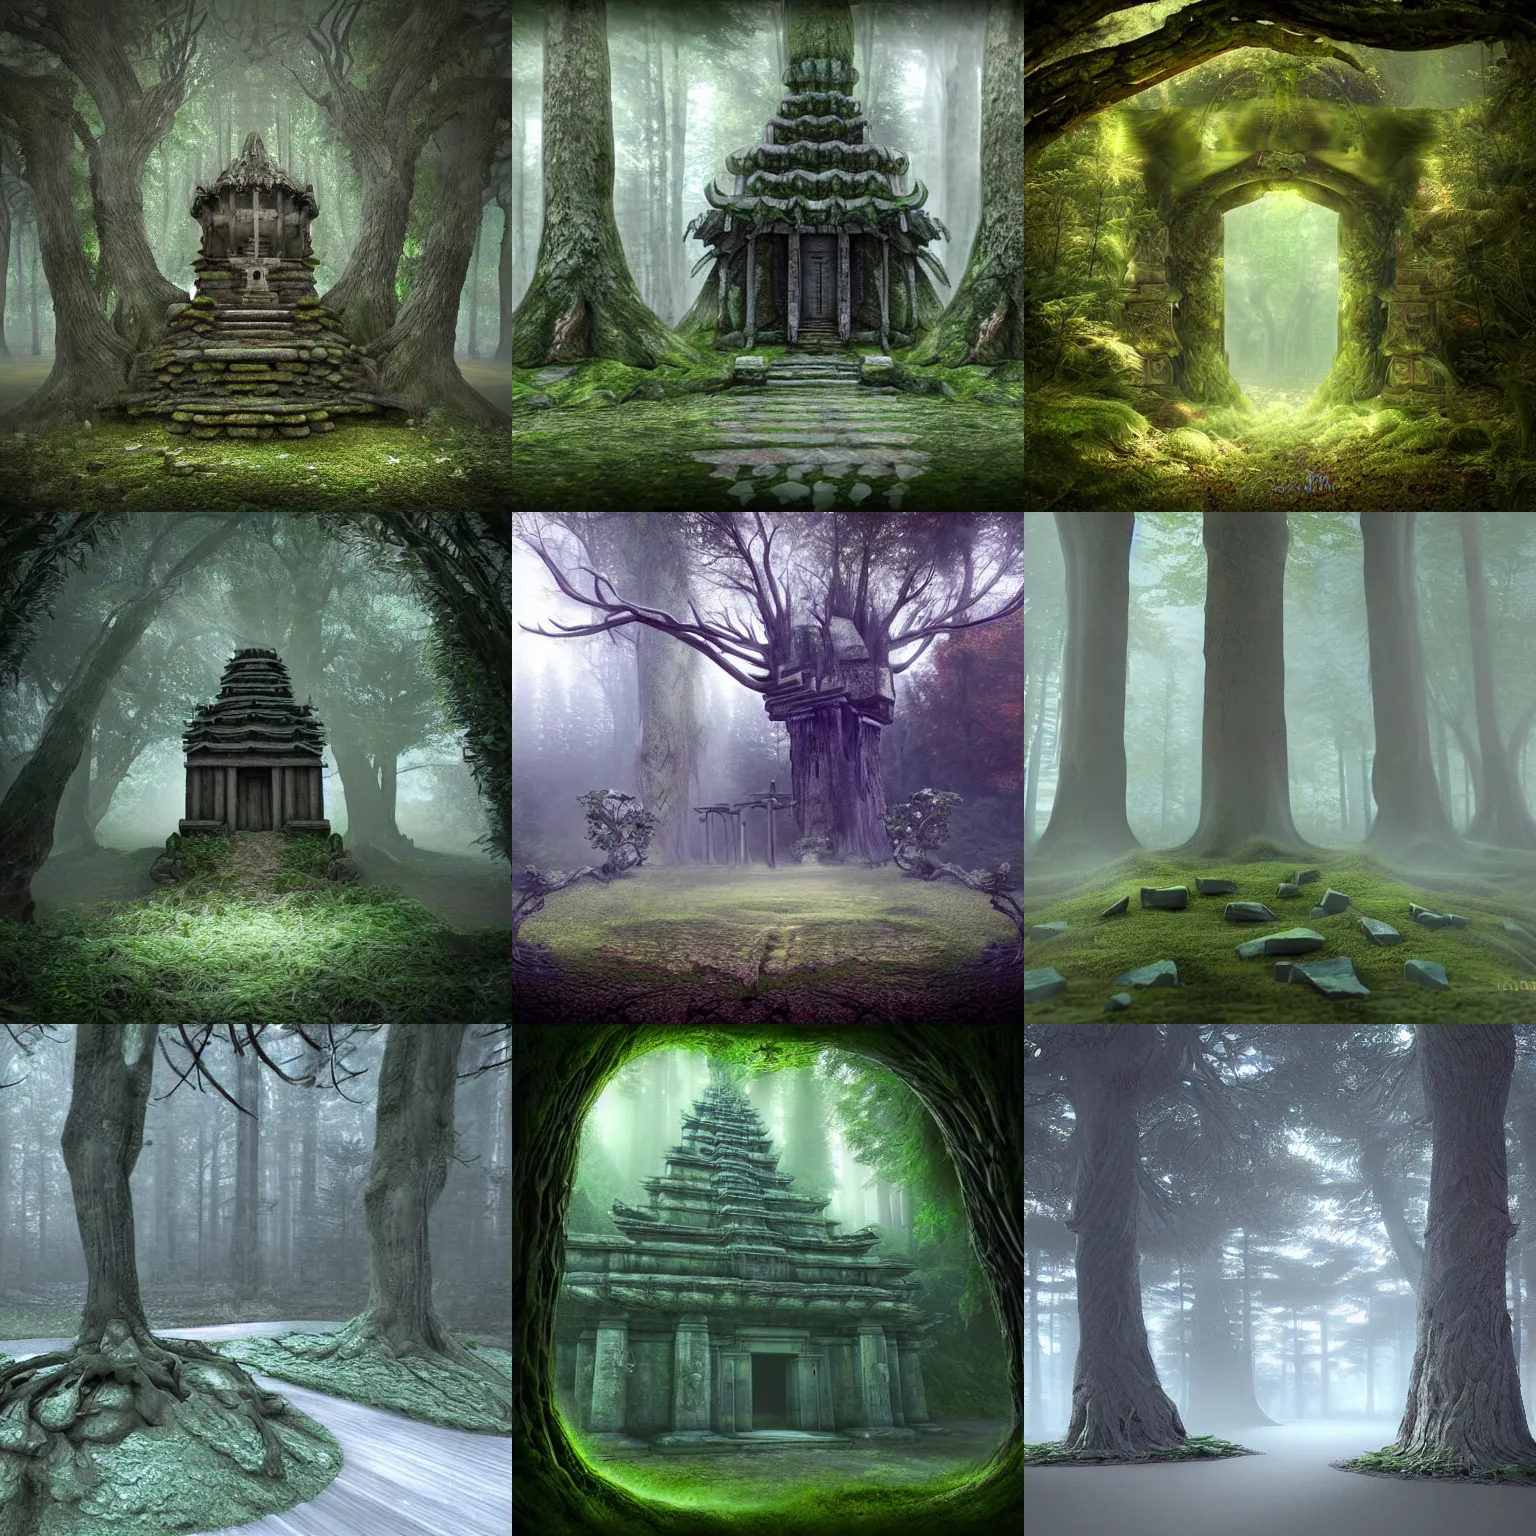 Prompt: Mysterious Forest Temple, 3d digital art by Brunhild De Rooij